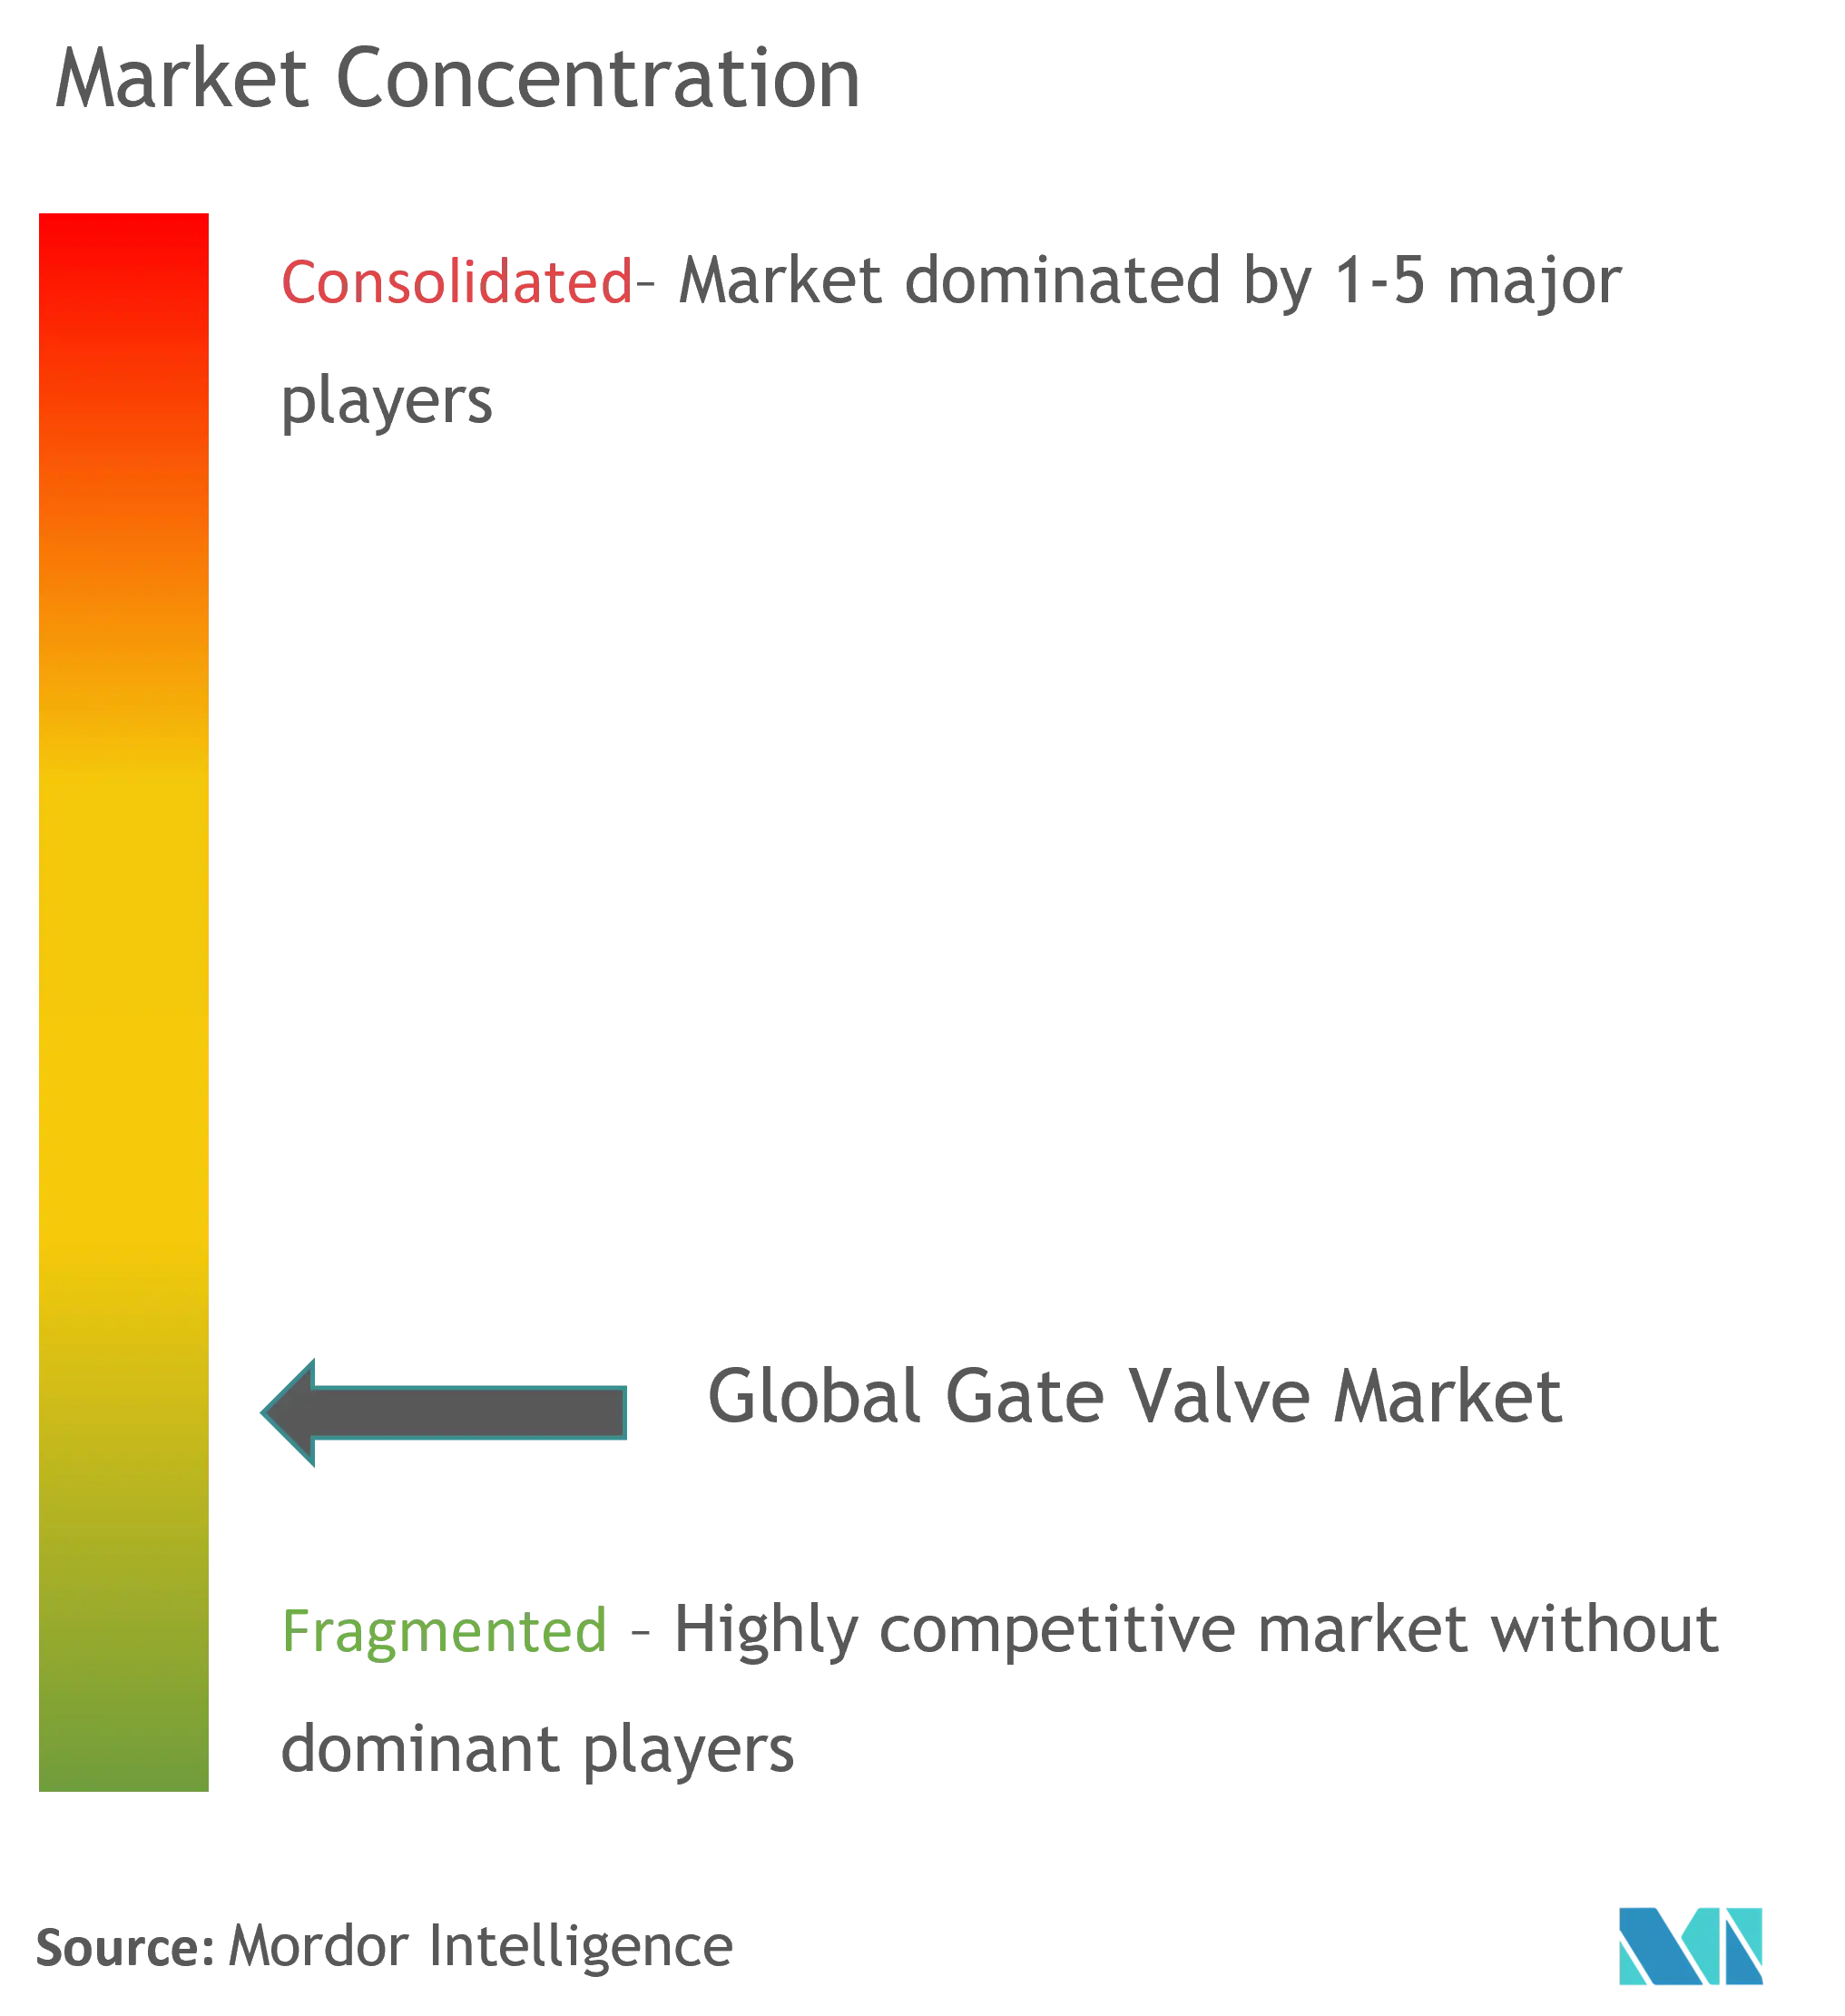 Global Gate Valve Market Concentration